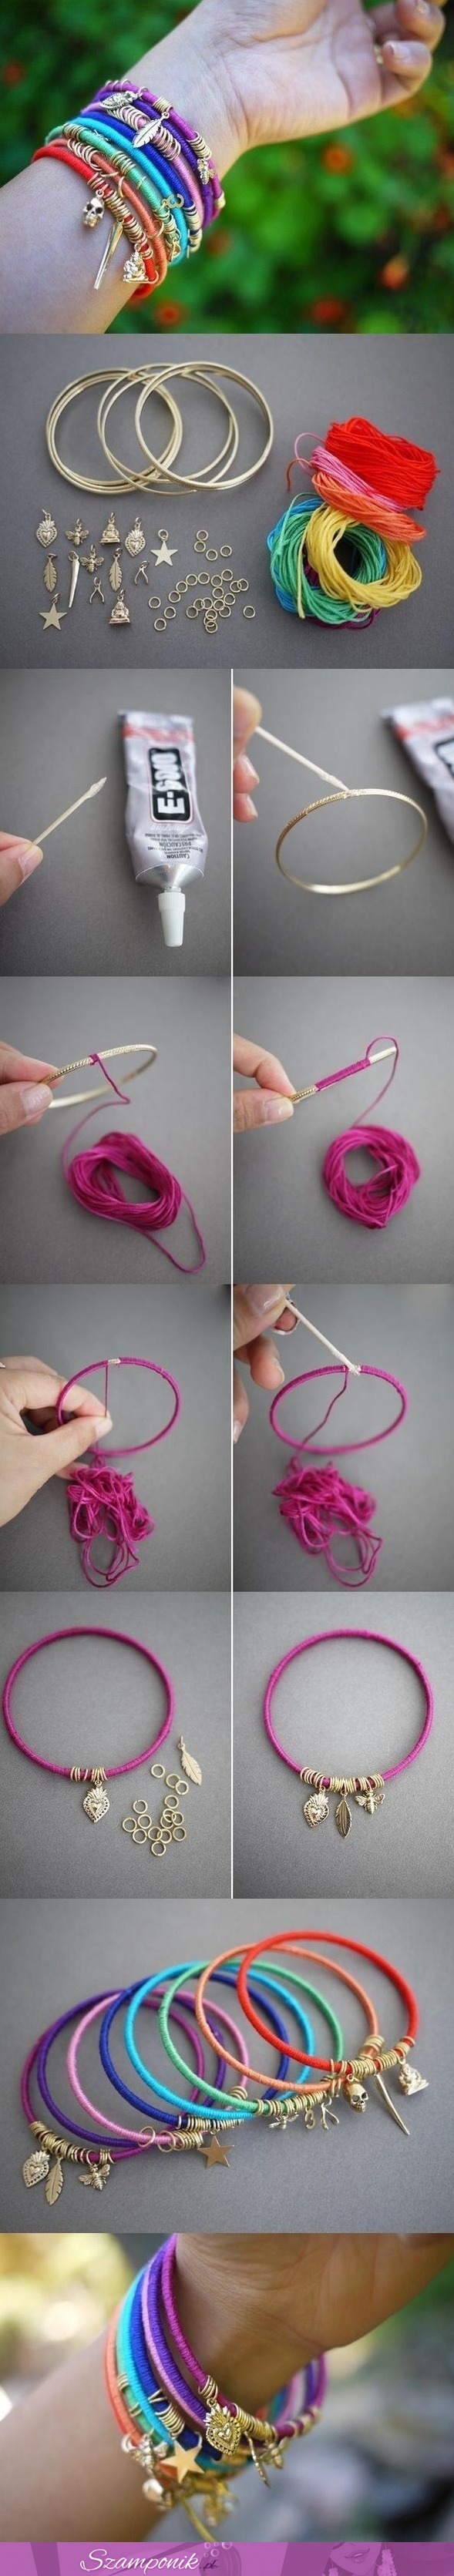 Zobacz jak zrobić kolorowe bransoletki, fajny pomysł na lato! :)